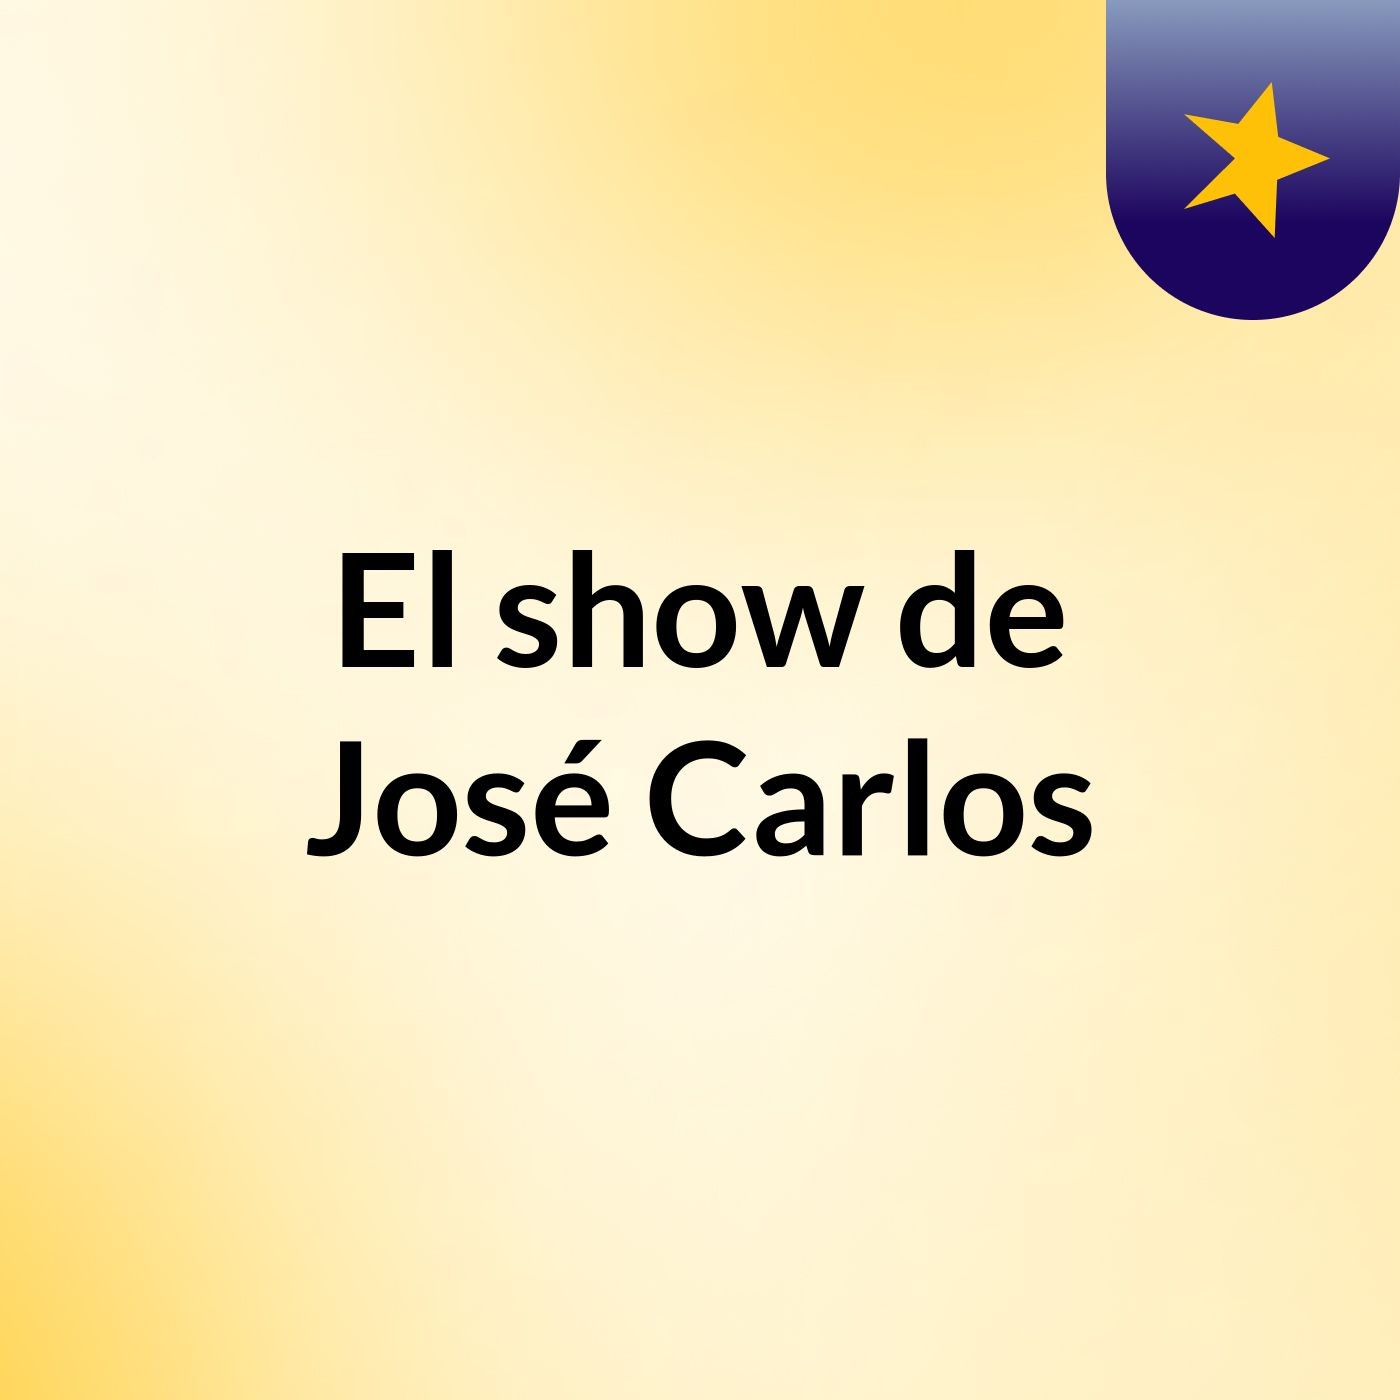 El show de José Carlos